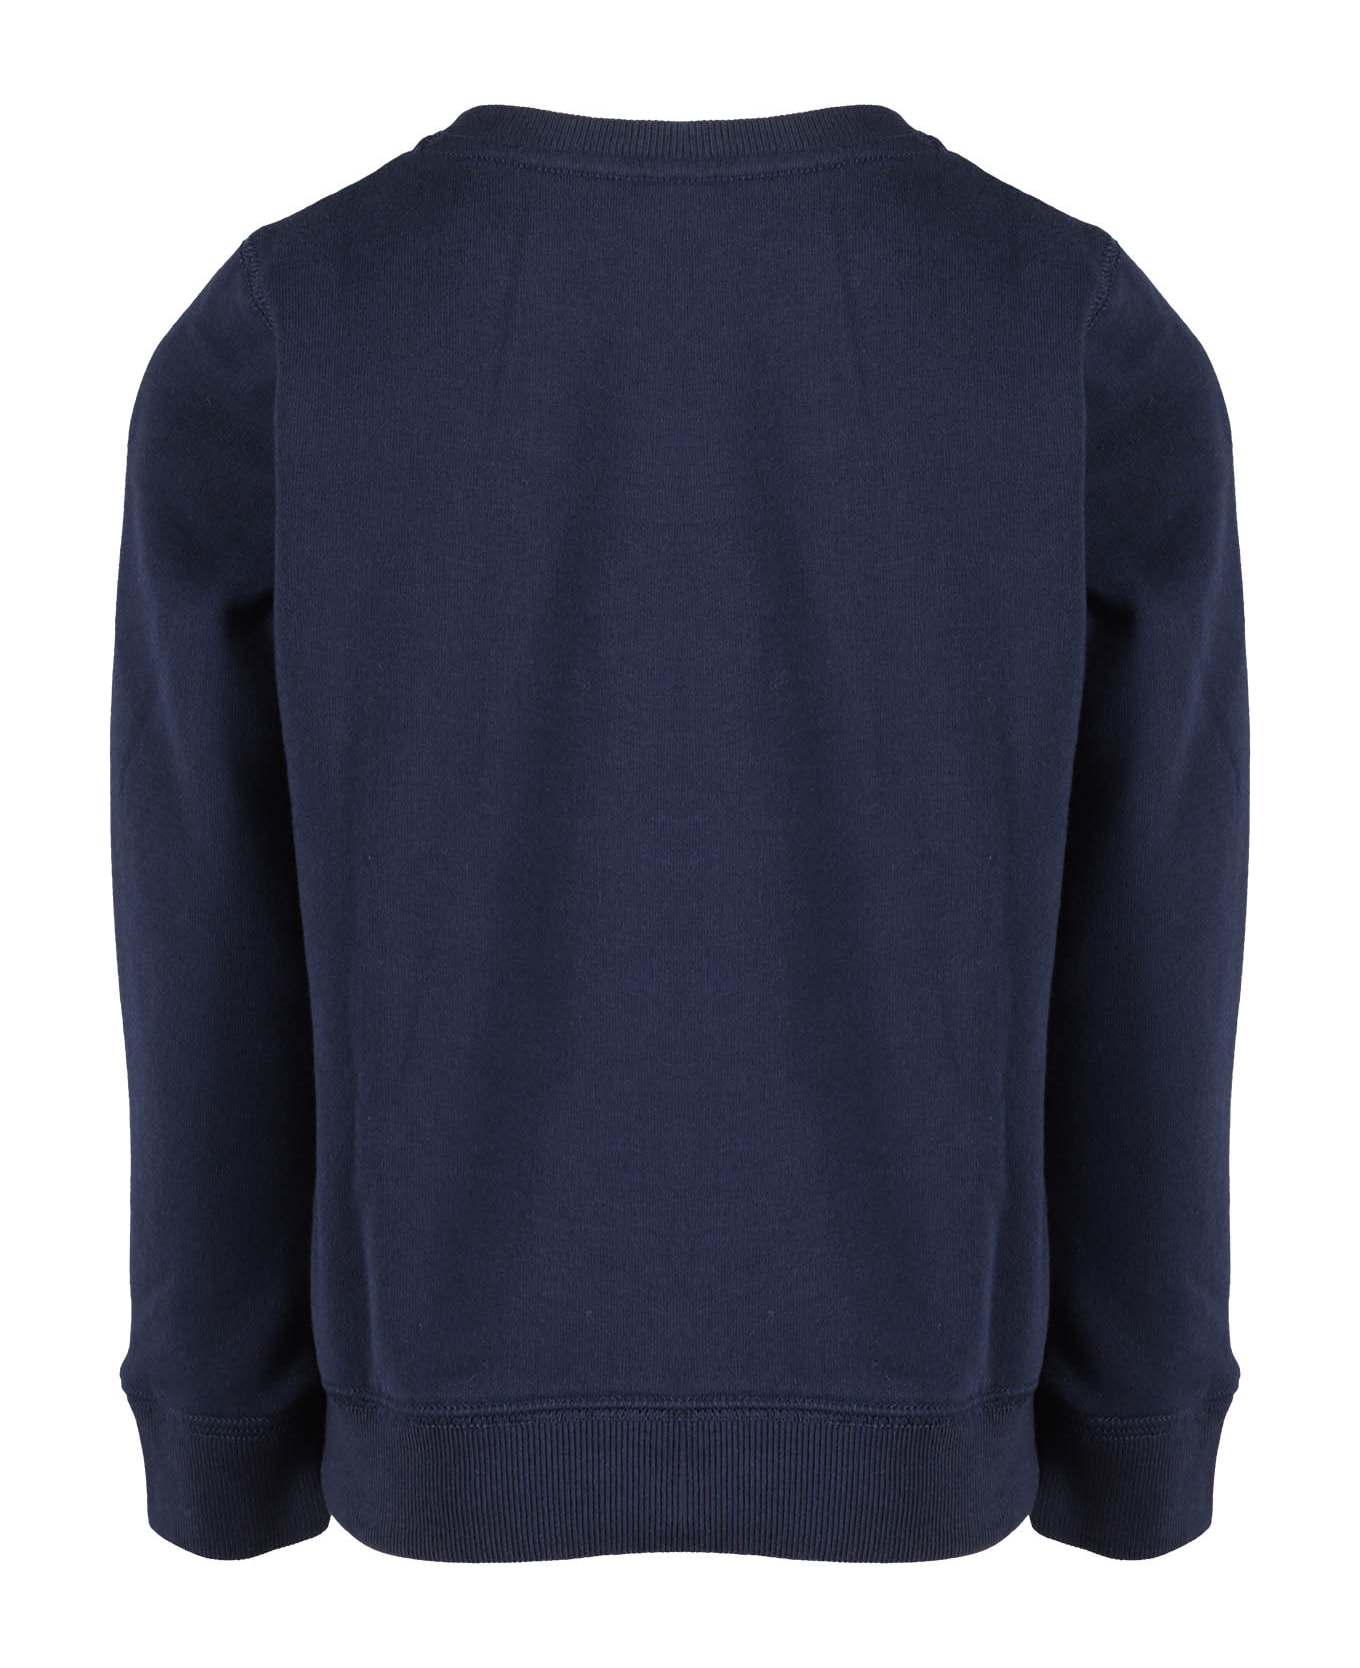 Polo Ralph Lauren Sweatshirt - Navy